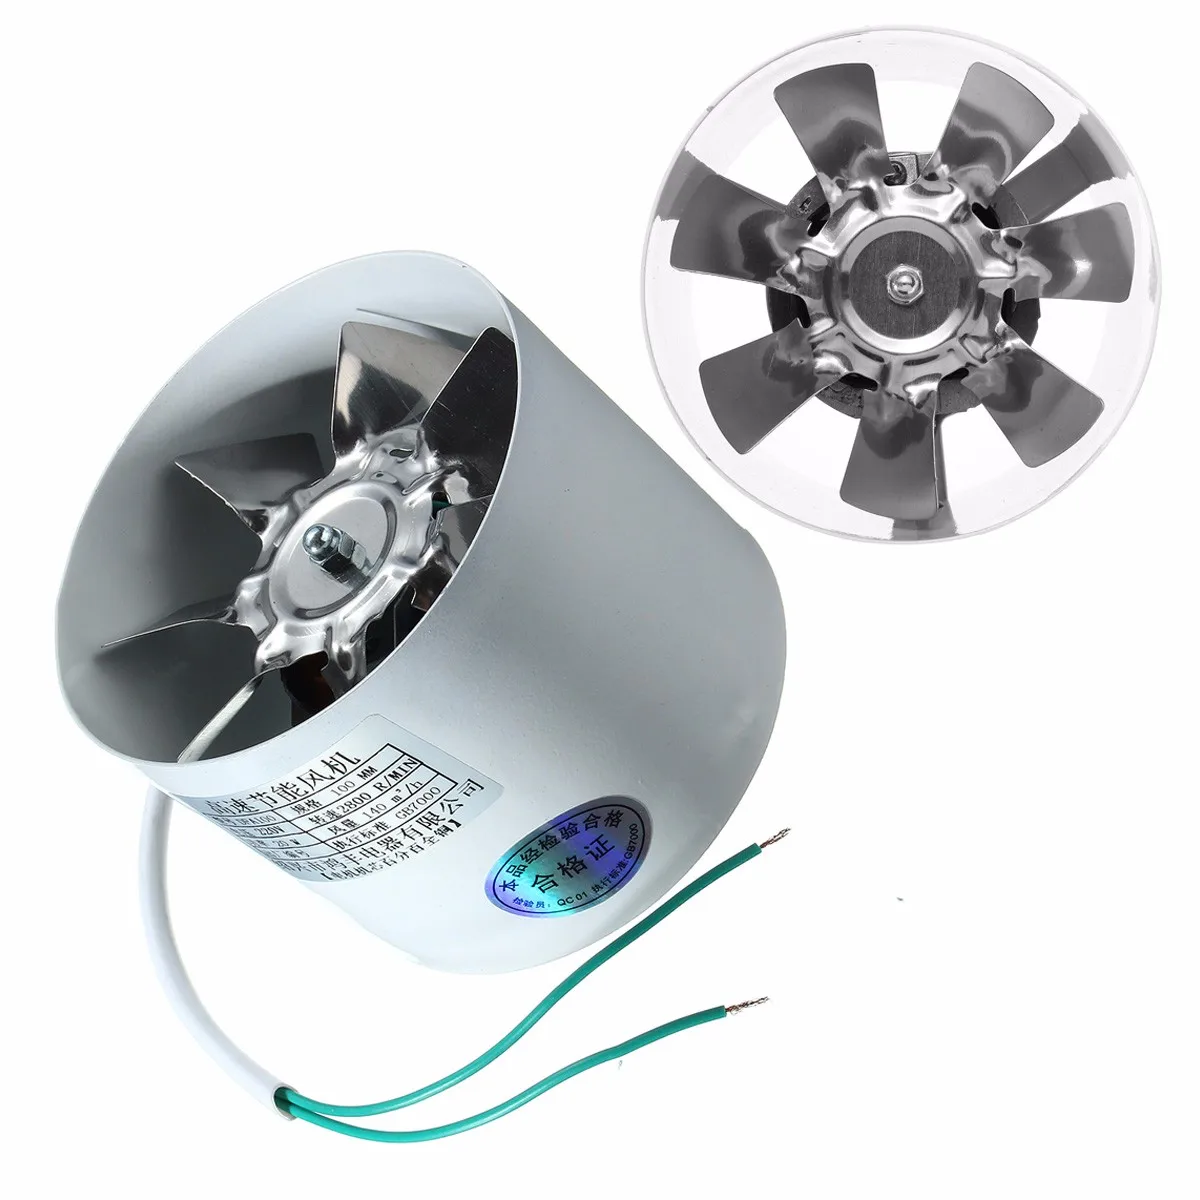 

2800R/Min Duct Booster Vent Fan Metal 220V 20W 4 Inch Inline Ducting Fan Exhaust Ventilation Duct Fan Accessories 10 x 7.5cm